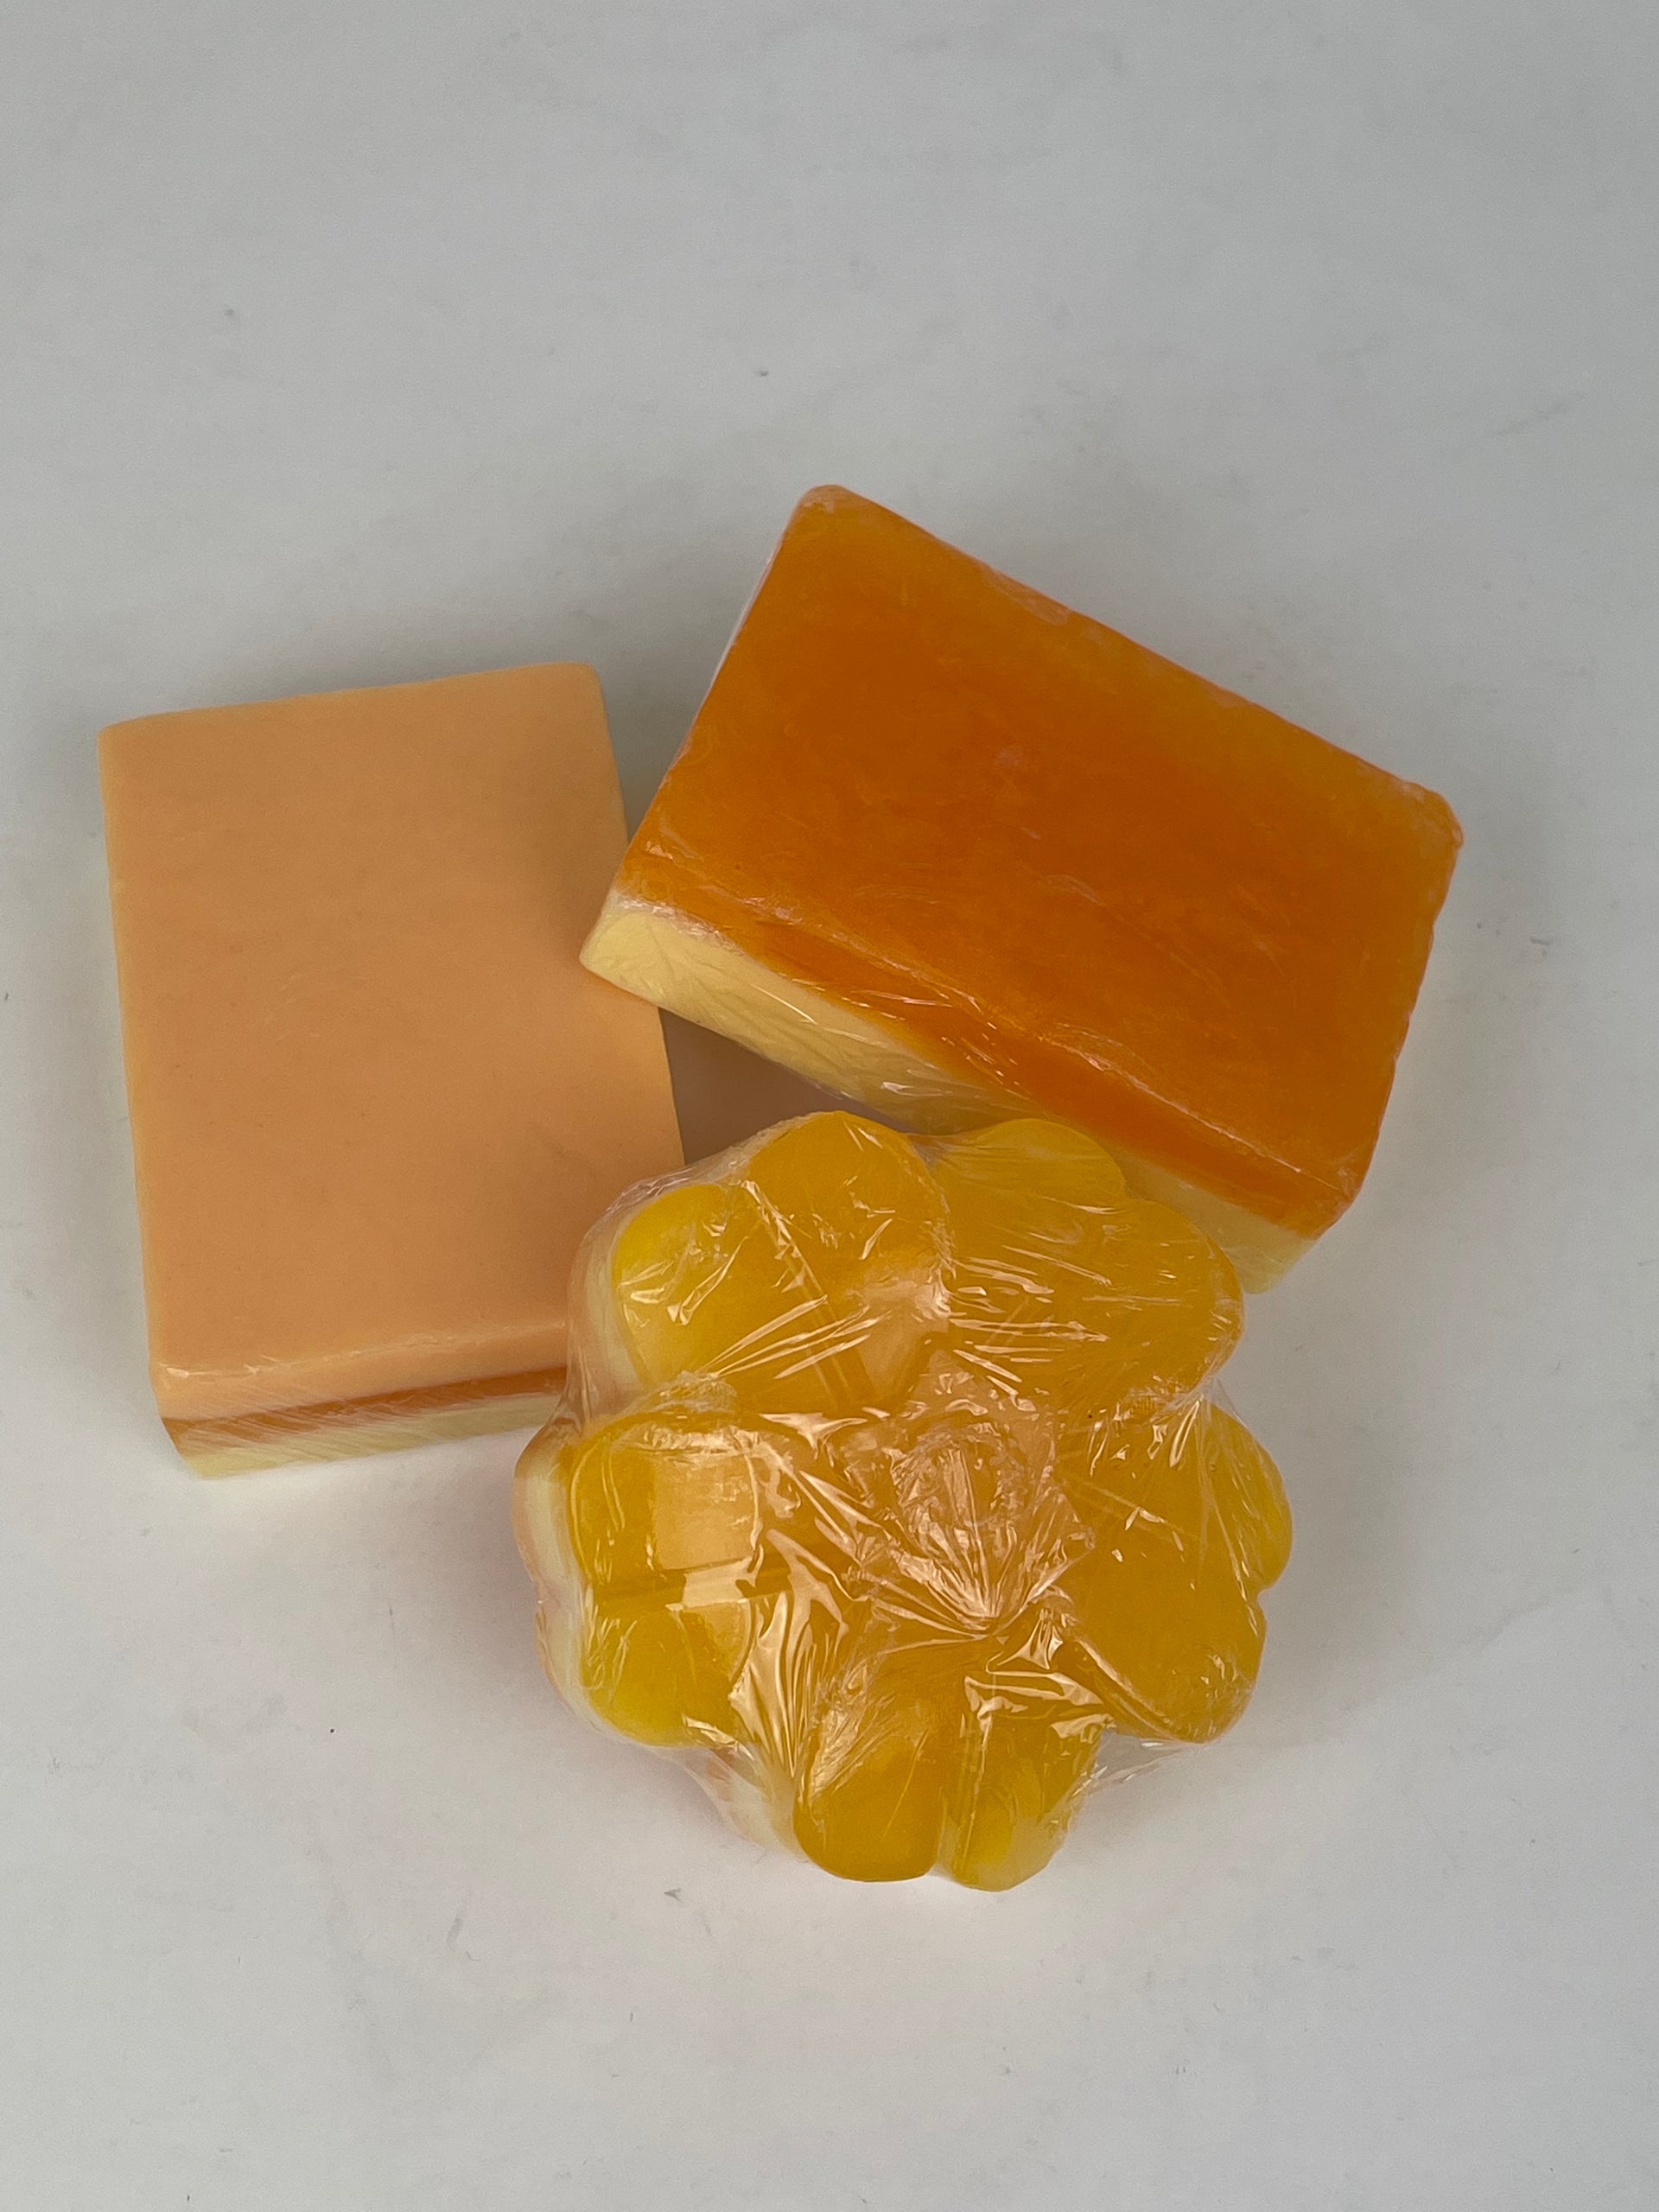 Orange Bar Soap, Corsica Scents